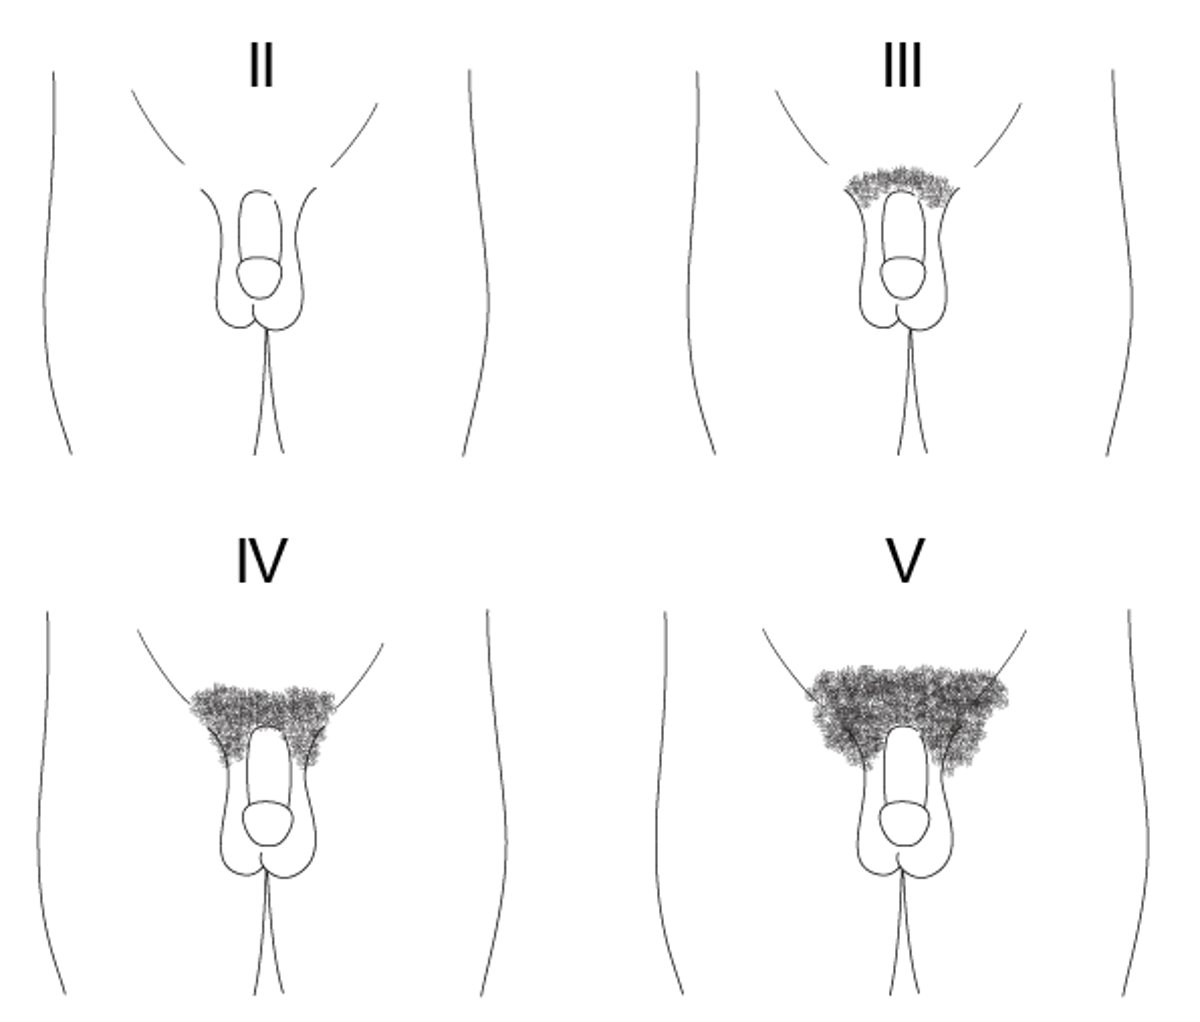 Representación de los estadios II a IV de Tanner del desarrollo del vello púbico en niños